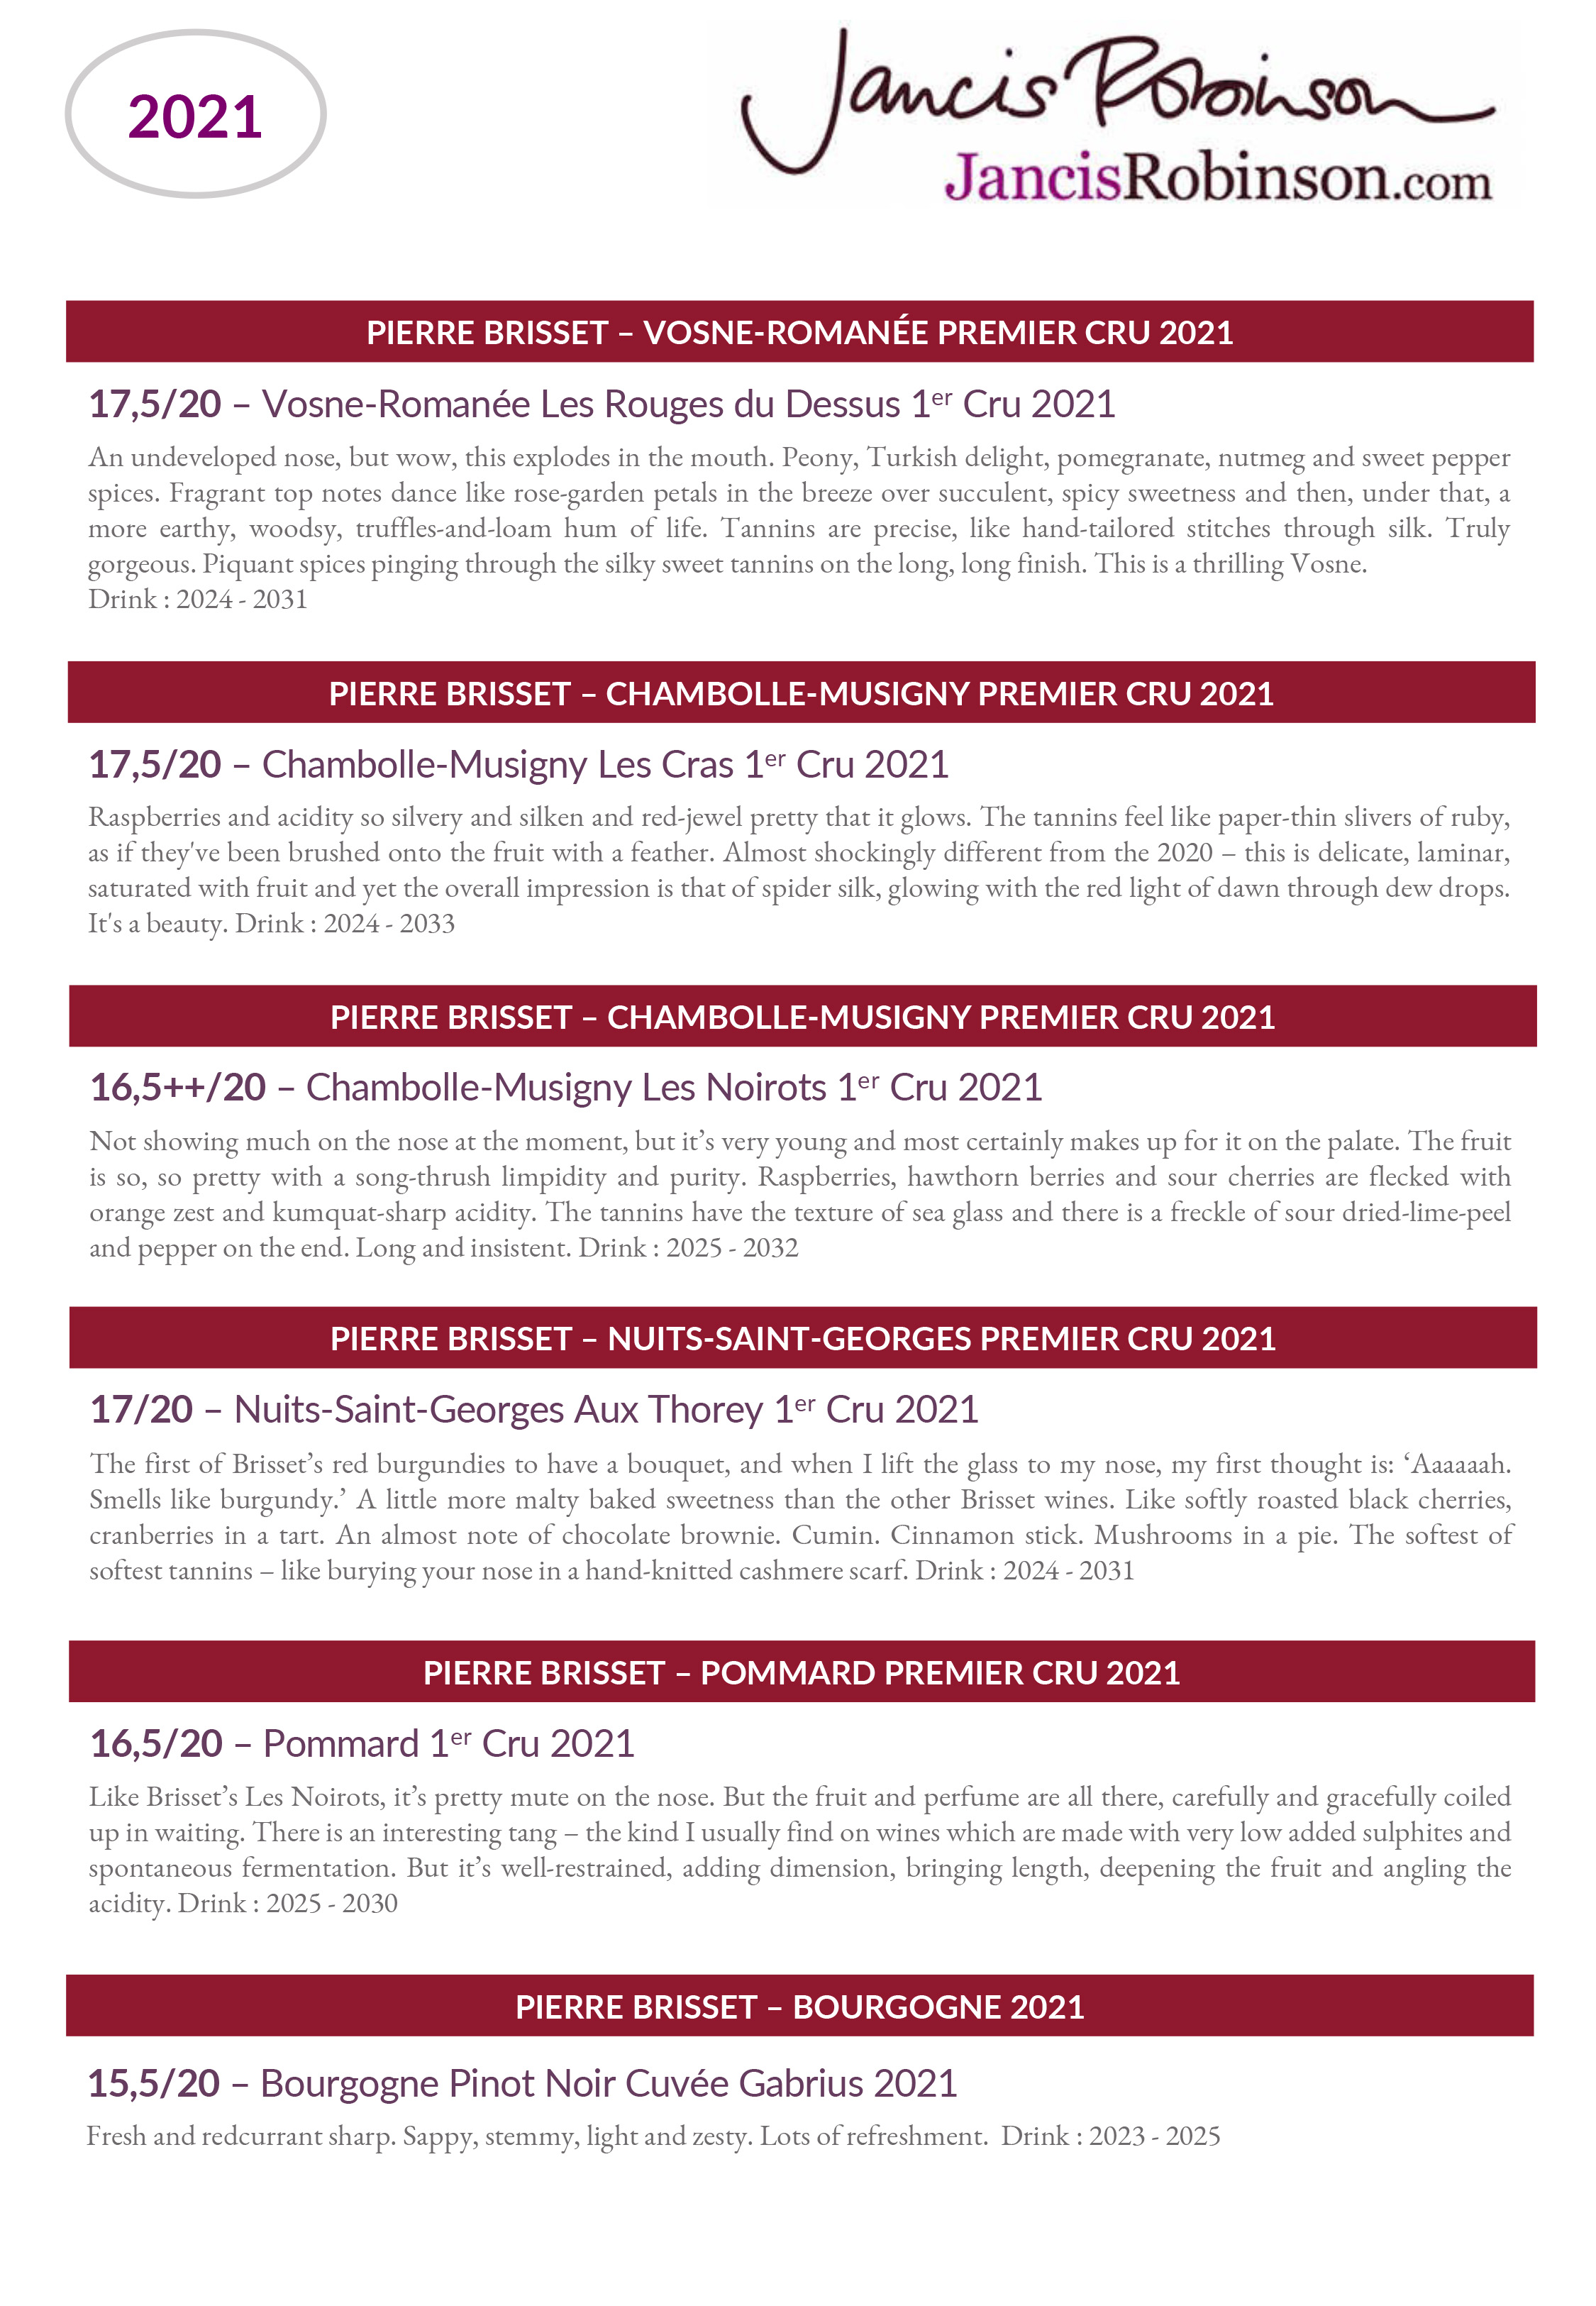 Vins rouges Pierre Brisset millesime 2021 : Notes de degustation de Jancis Robinson